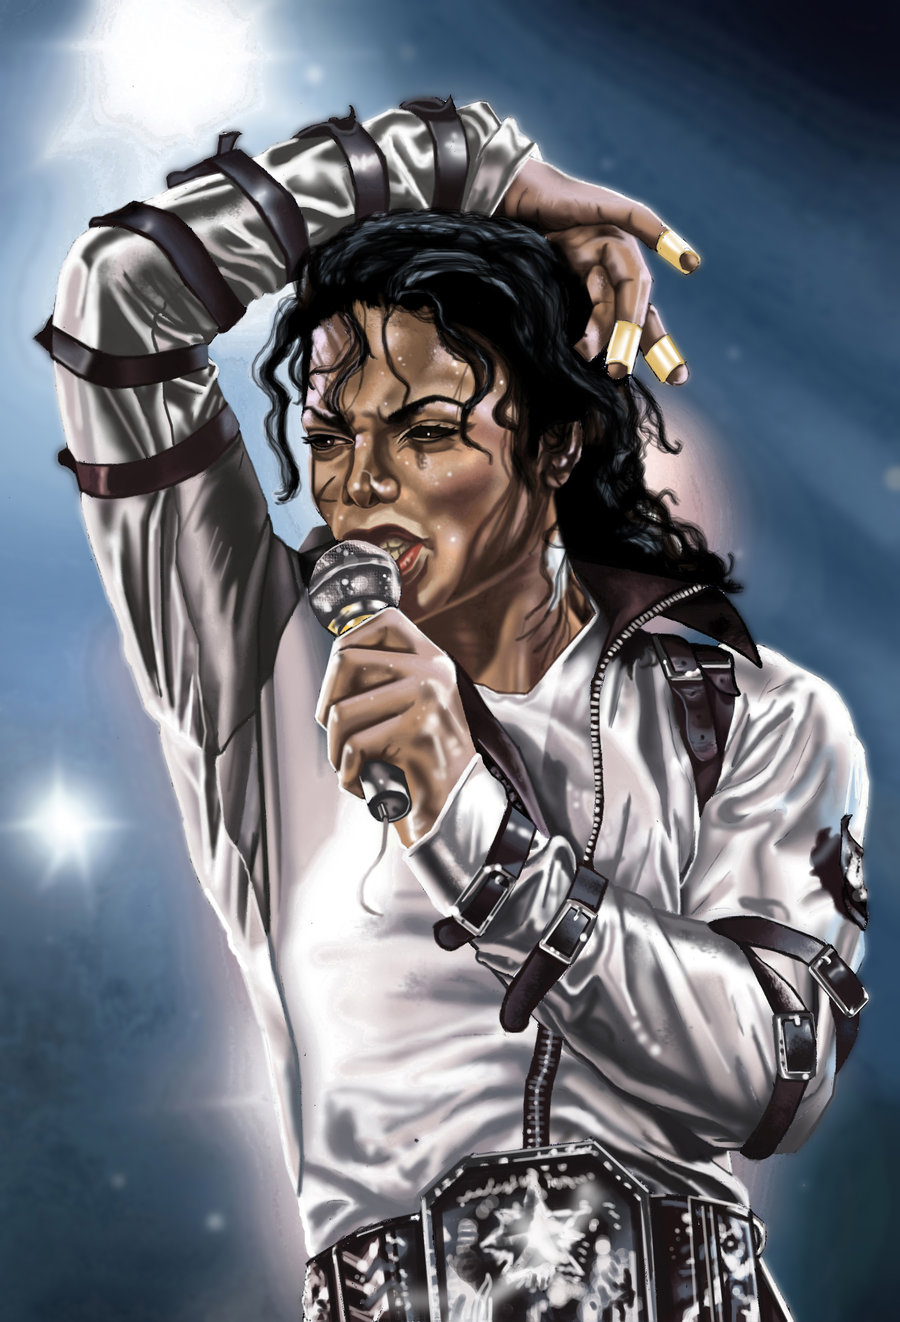 Michael Jackson ♥ - Michael Jackson Fan Art (31008953) - Fanpop